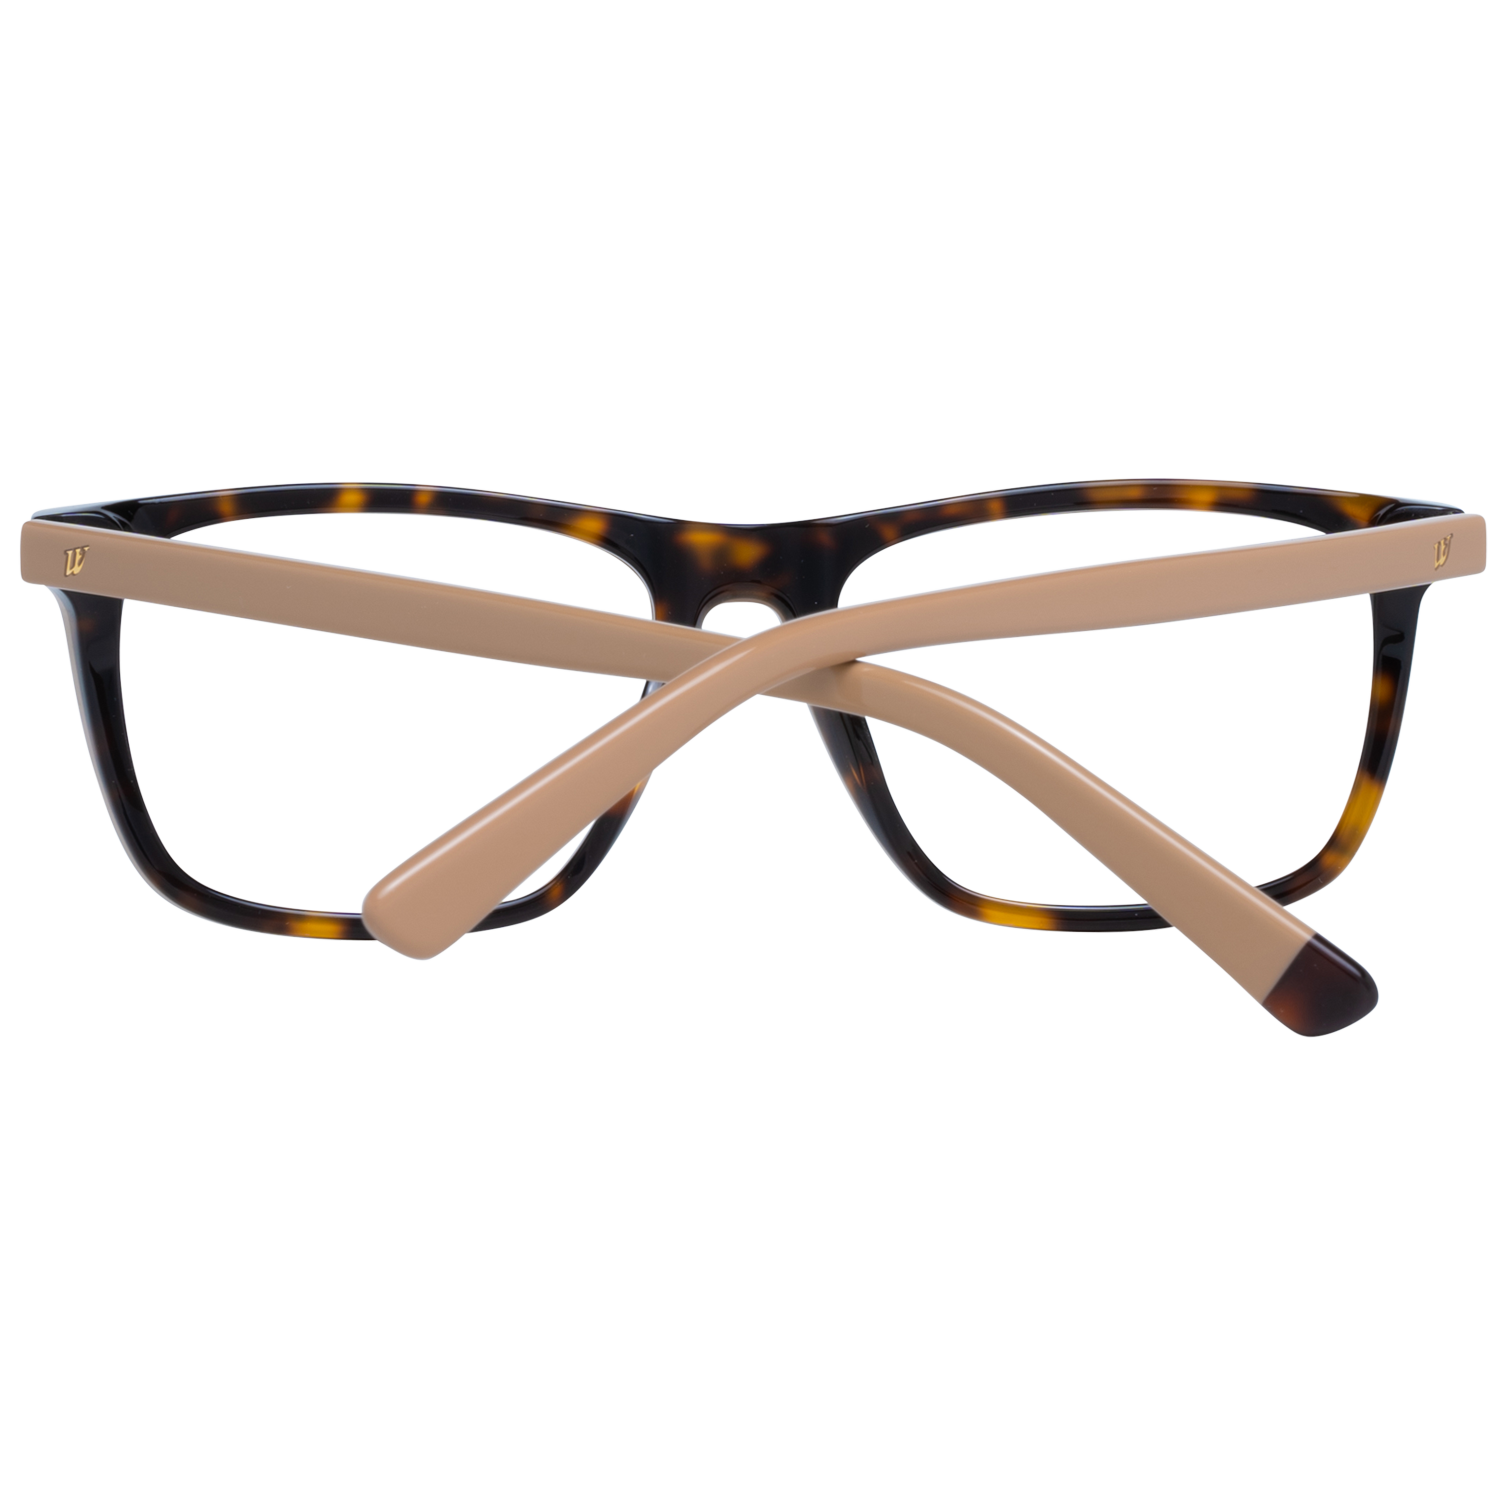 Web Frames Web Optical Frame WE5261 B56 54 Eyeglasses Eyewear UK USA Australia 